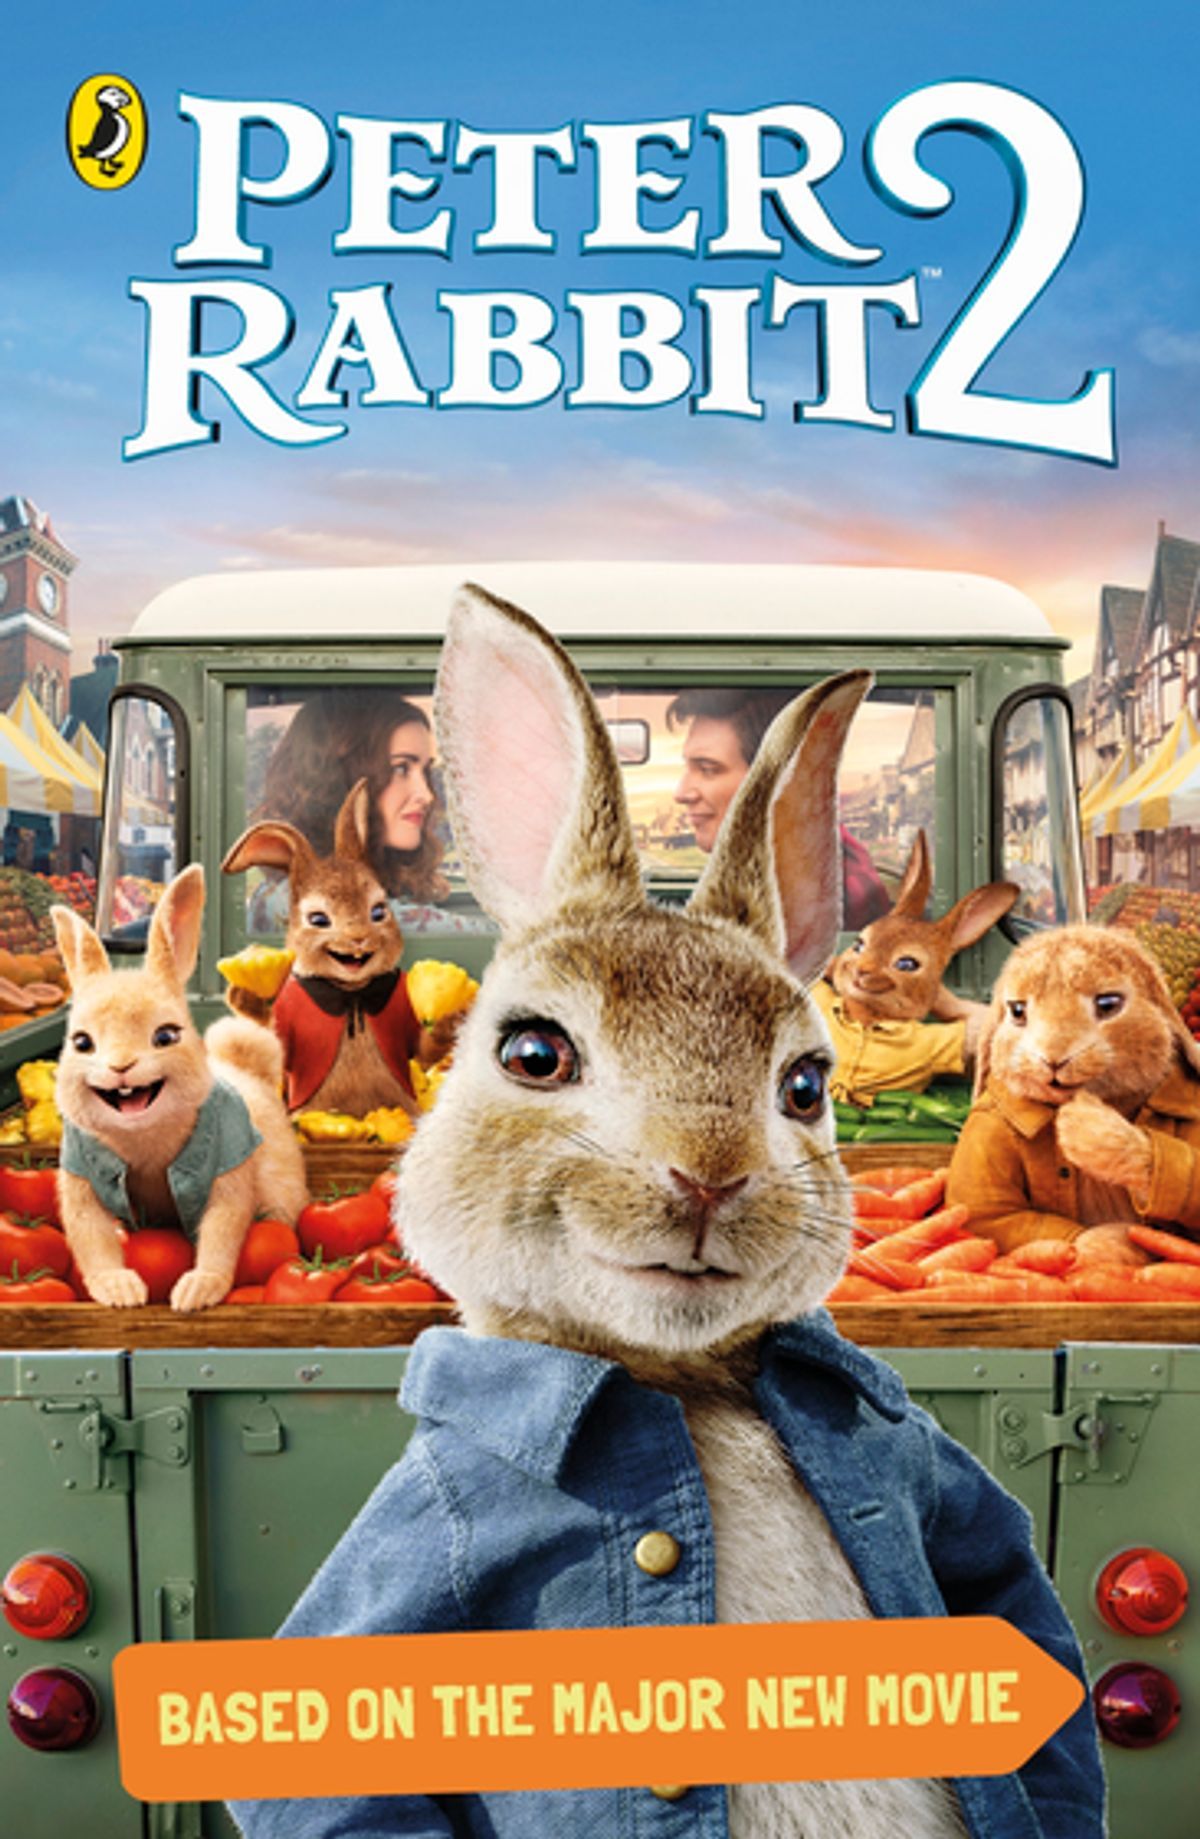 Peter Rabbit 2: The Runaway Wallpapers